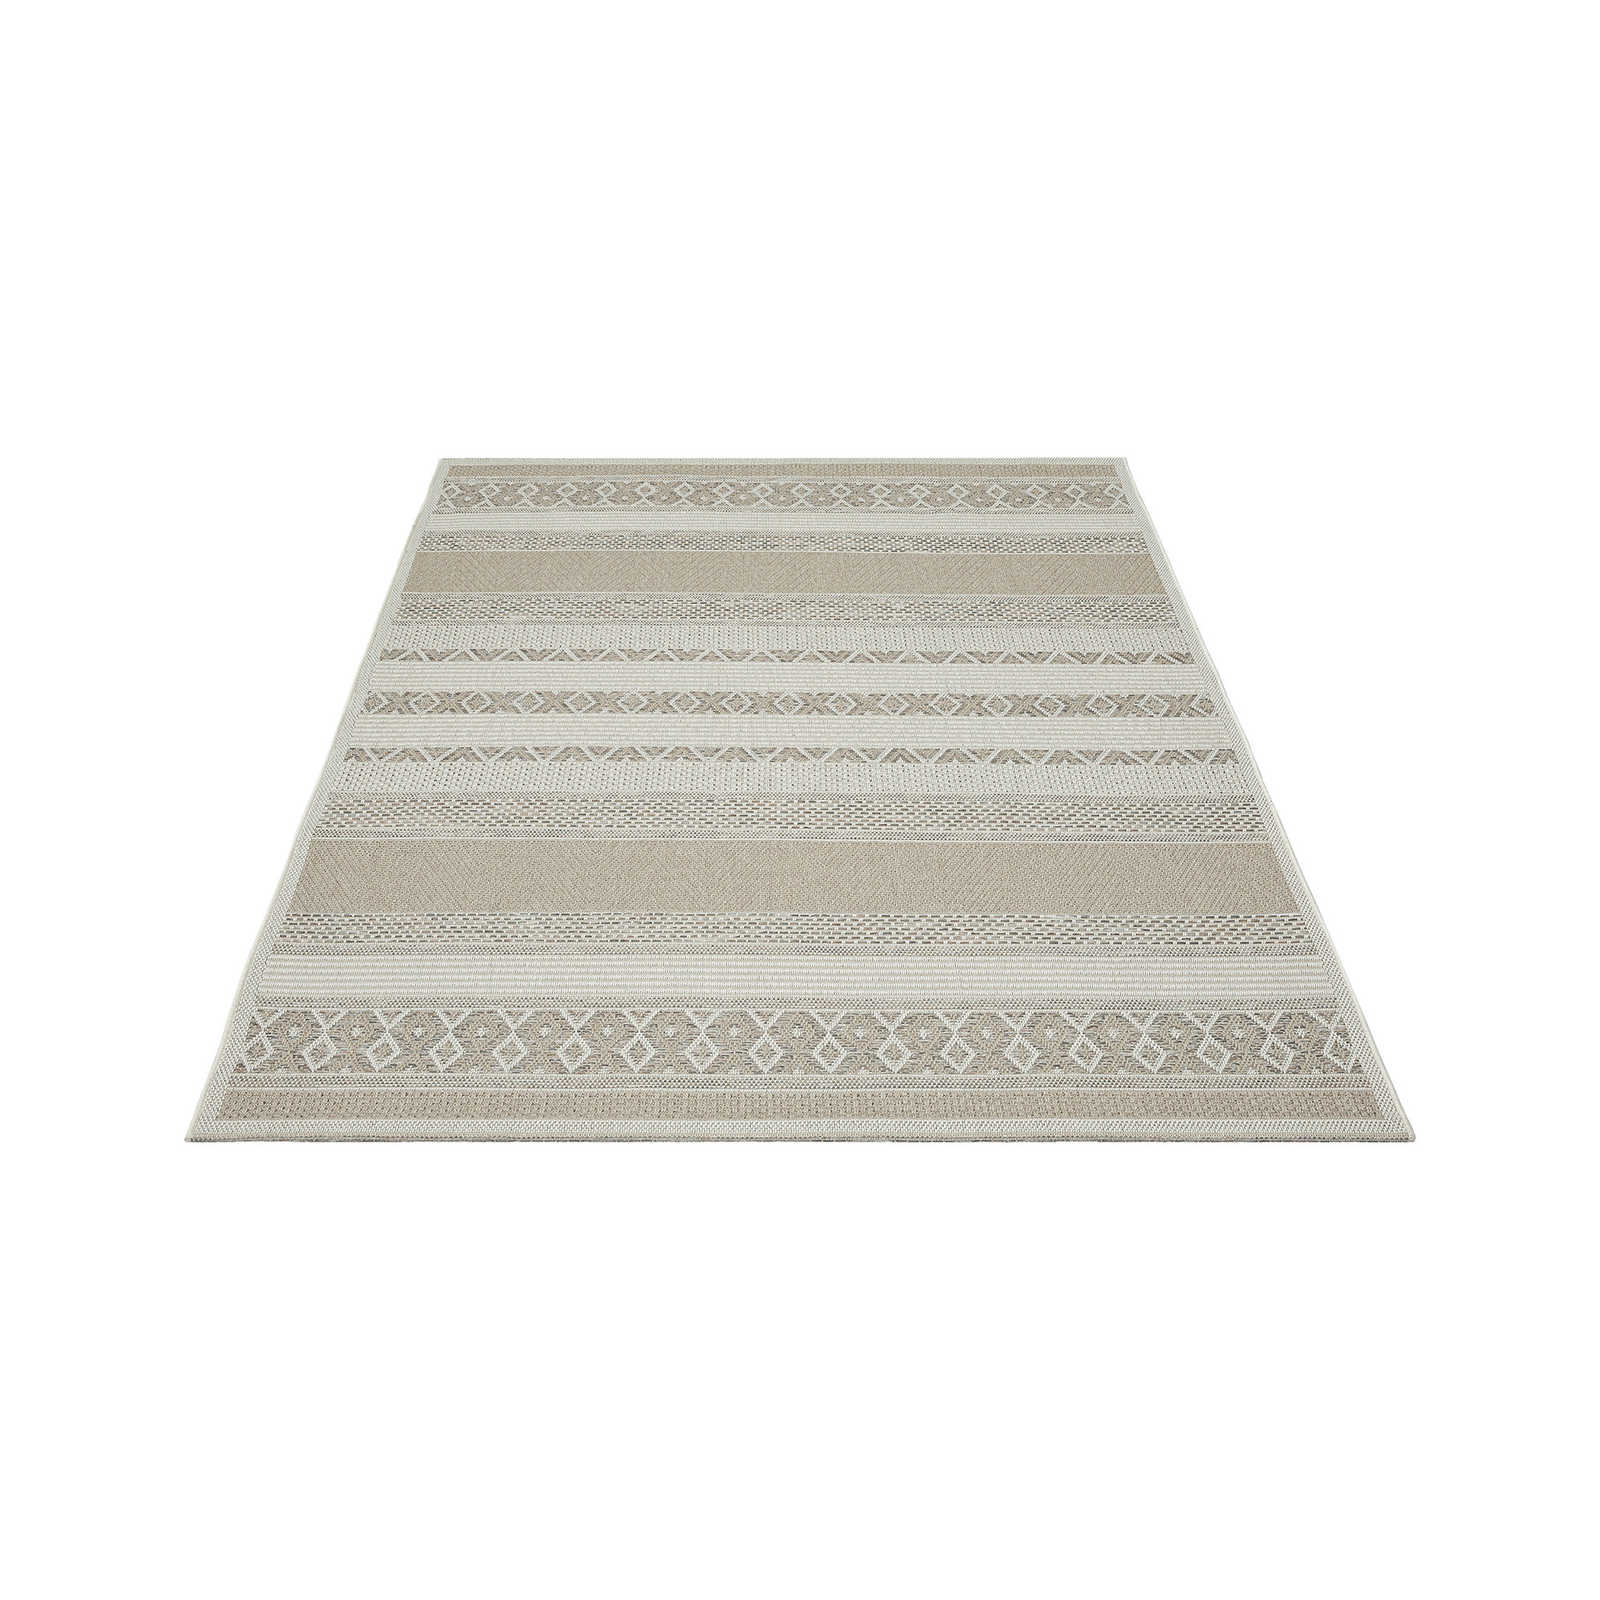 Outdoor Teppich aus Flachgewebe in schlichten Beige – 220 x 160 cm
